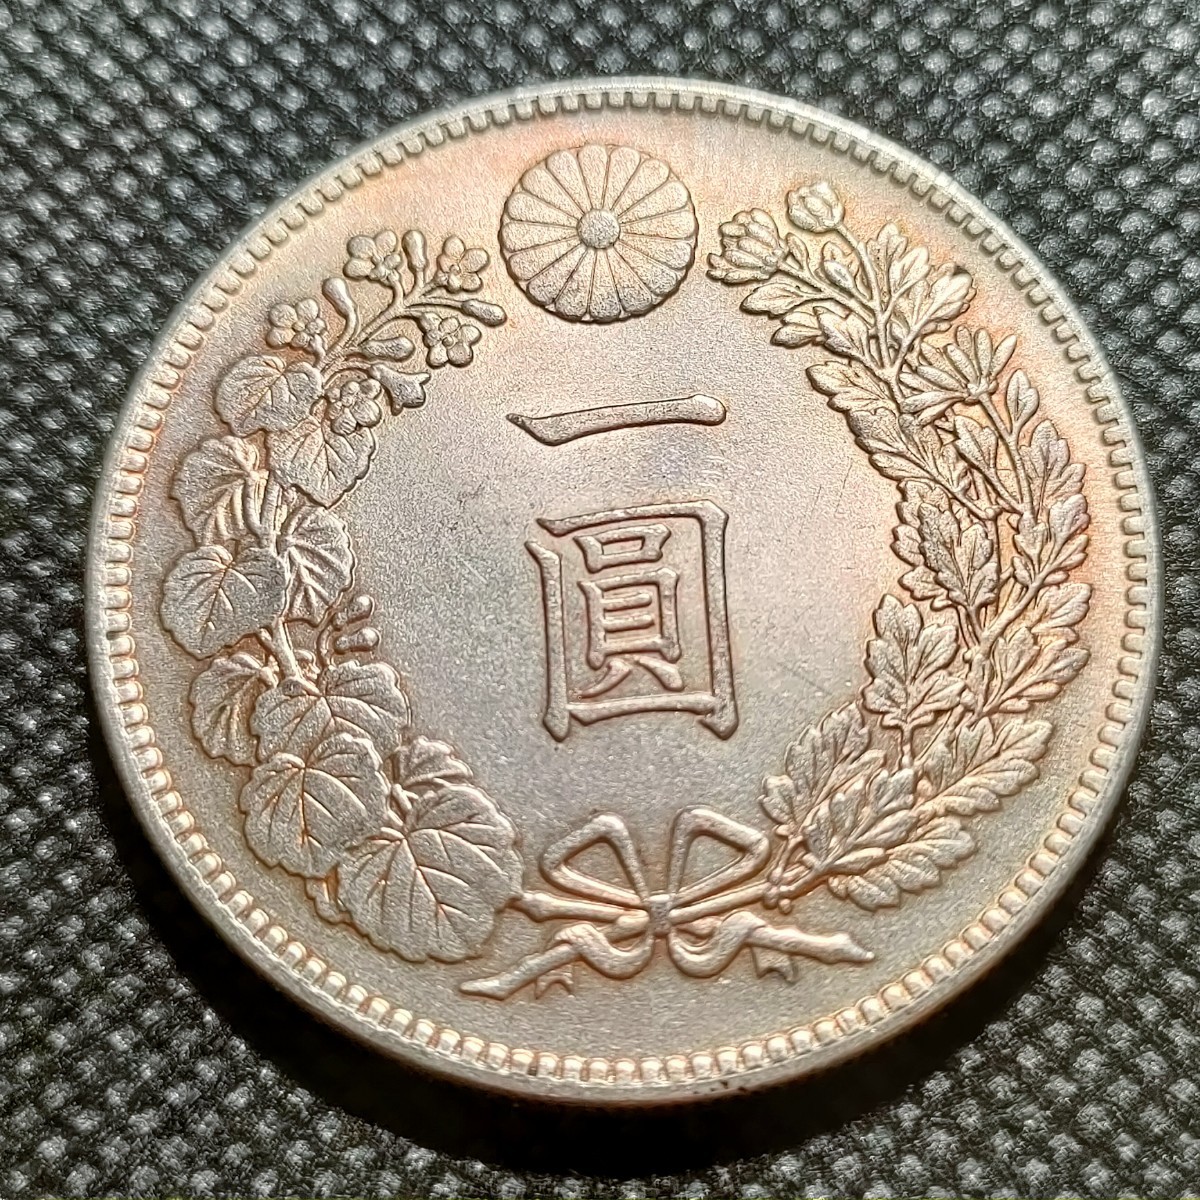 6515 日本古銭 一圓貨幣 明治37年 アンティークコレクションコインの画像1